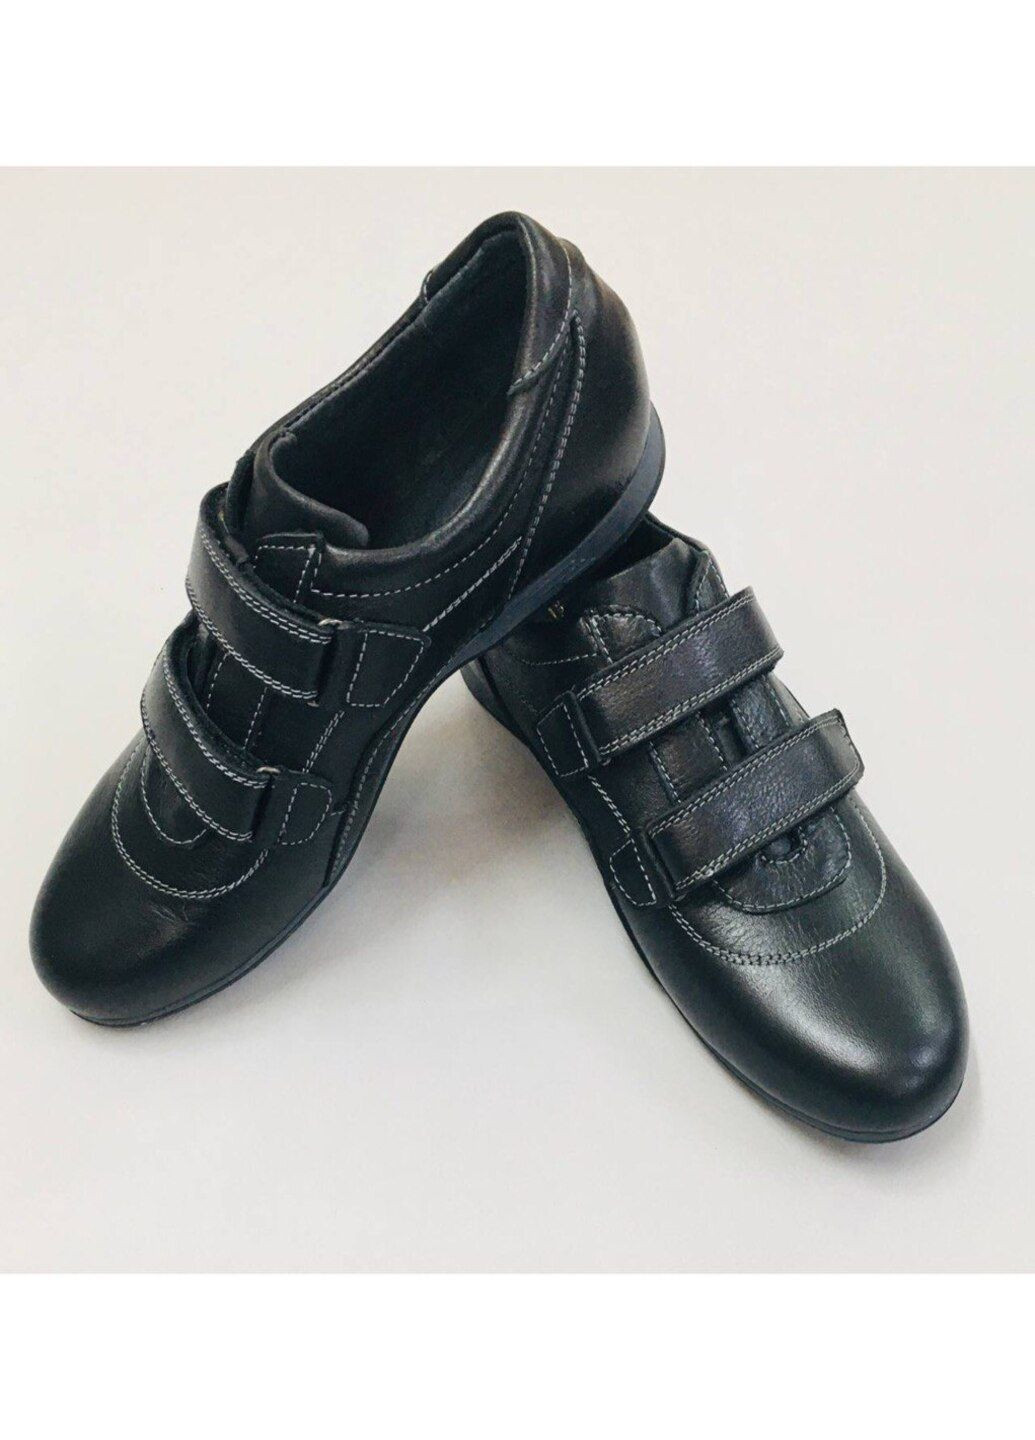 Черные туфли спортивные для мальчика на липучке Seboni